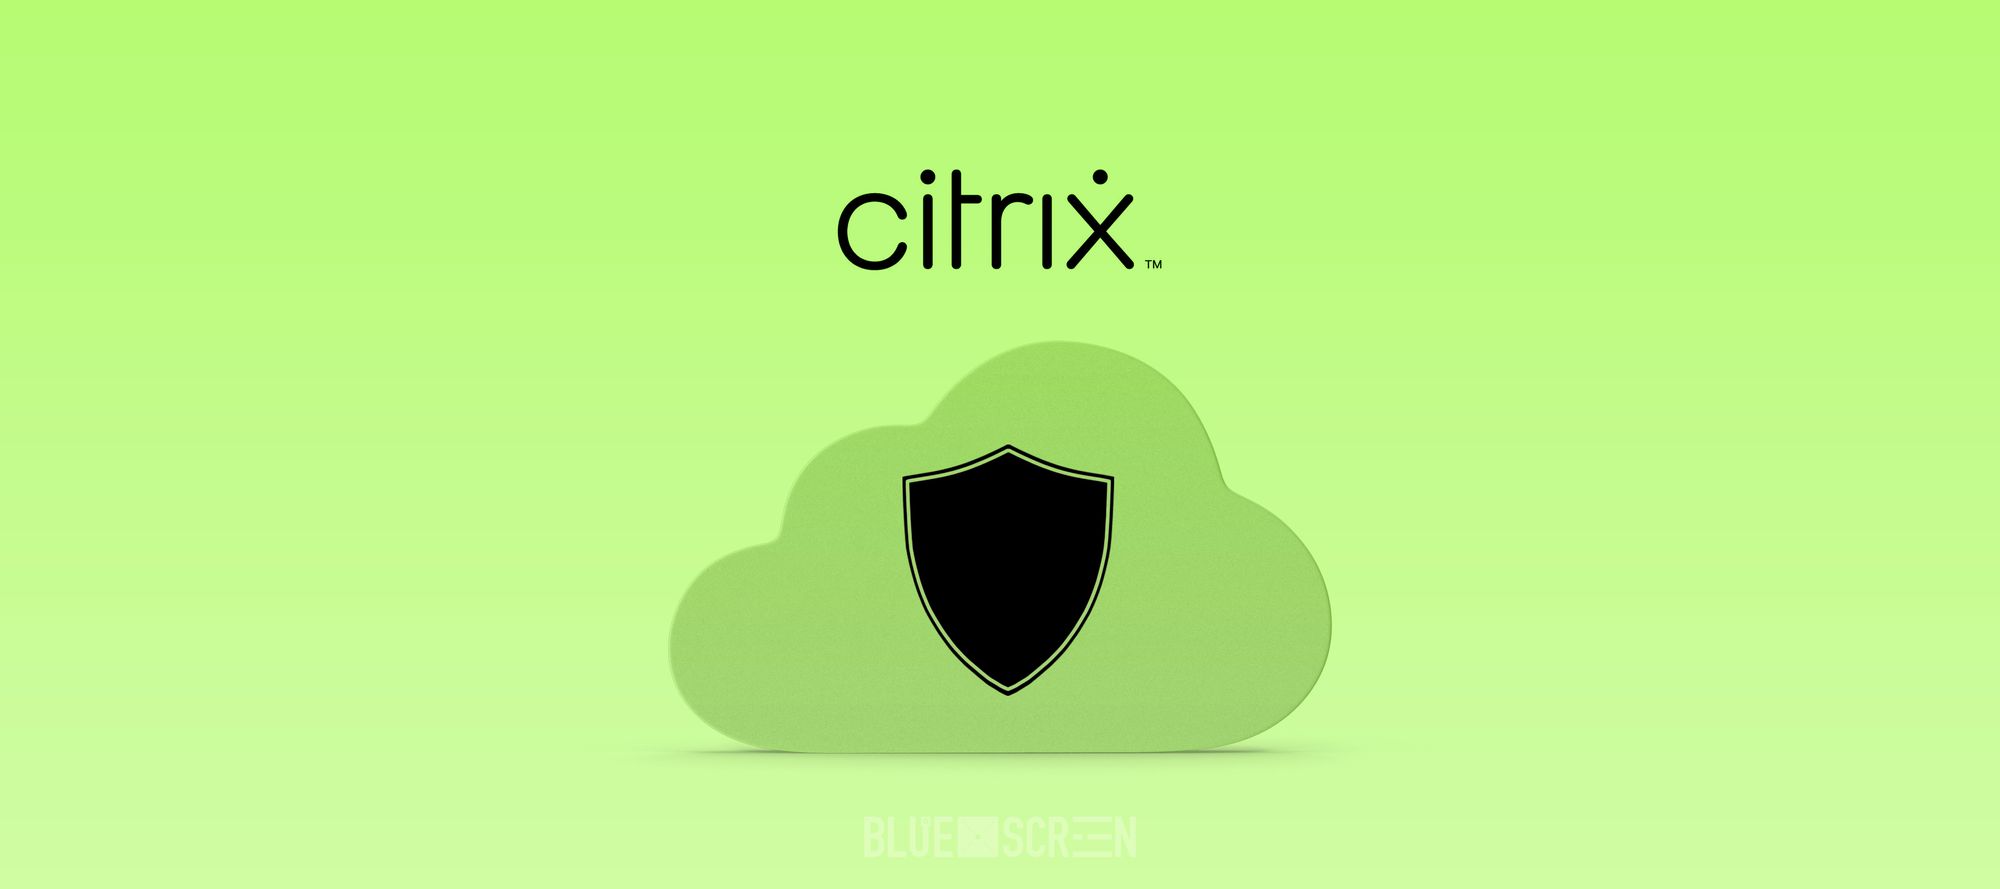 Казахстанцам будет доступна продукция официального  дистрибьютора Citrix